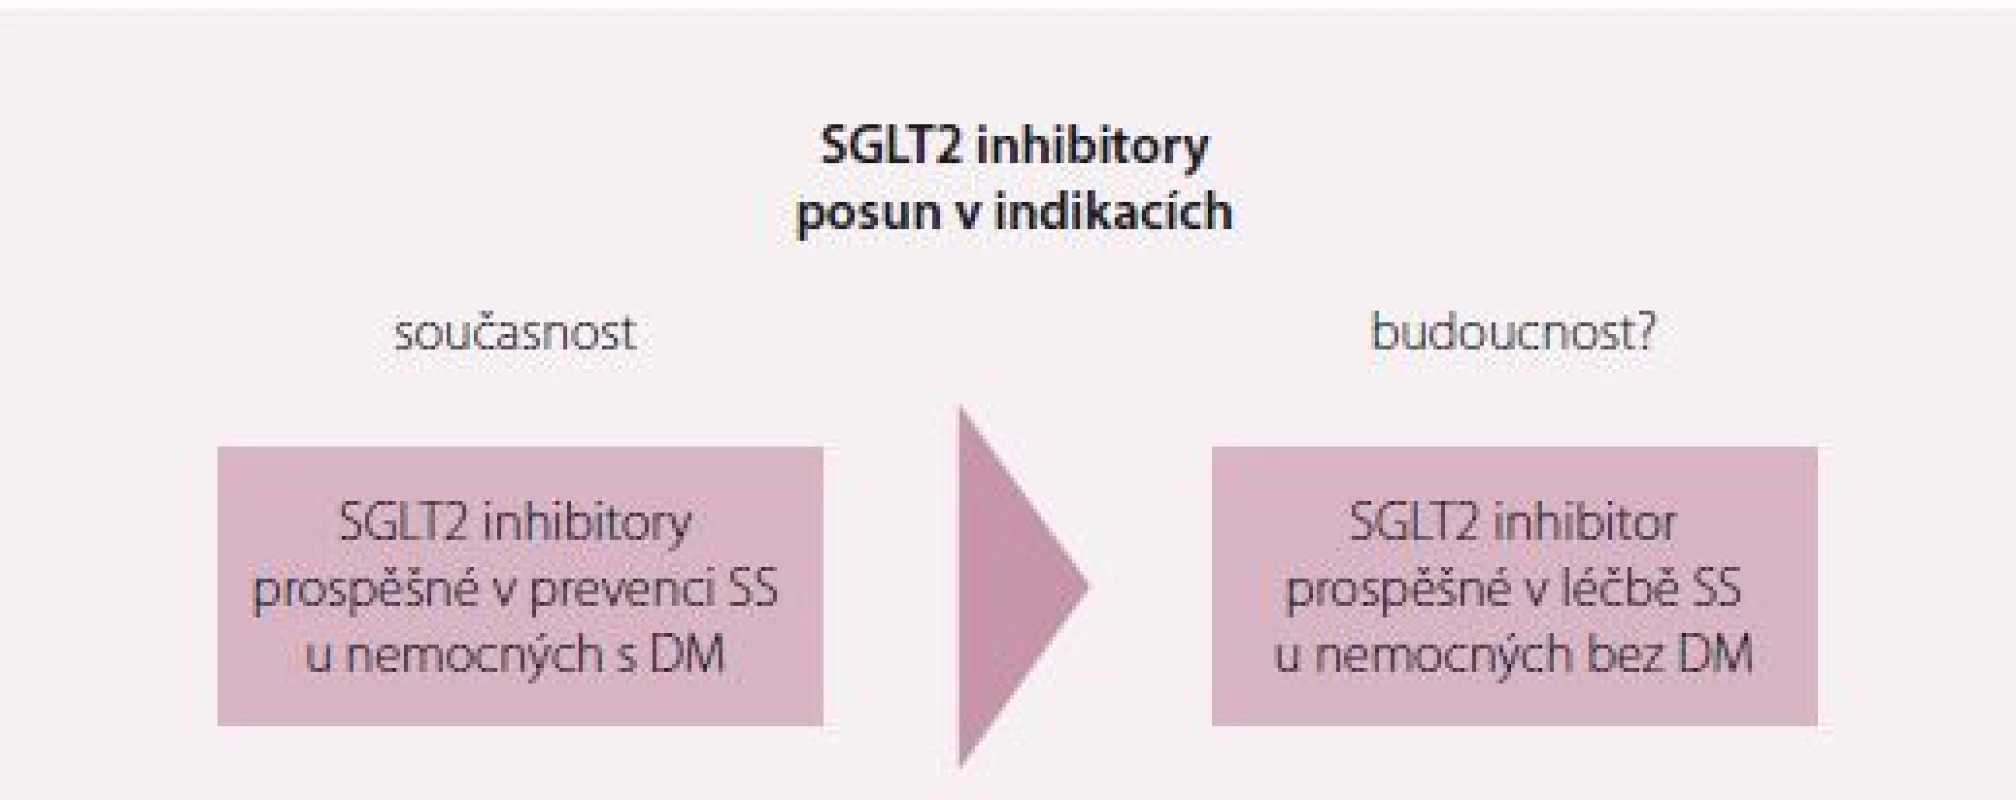 SGLT2 v primární a sekundární prevenci prevenci pacientů s DM 2. typu. Upraveno dle [17].<br>
SS – srdeční selhání; DM – diabetes mellitus; KV – kardiovaskulární